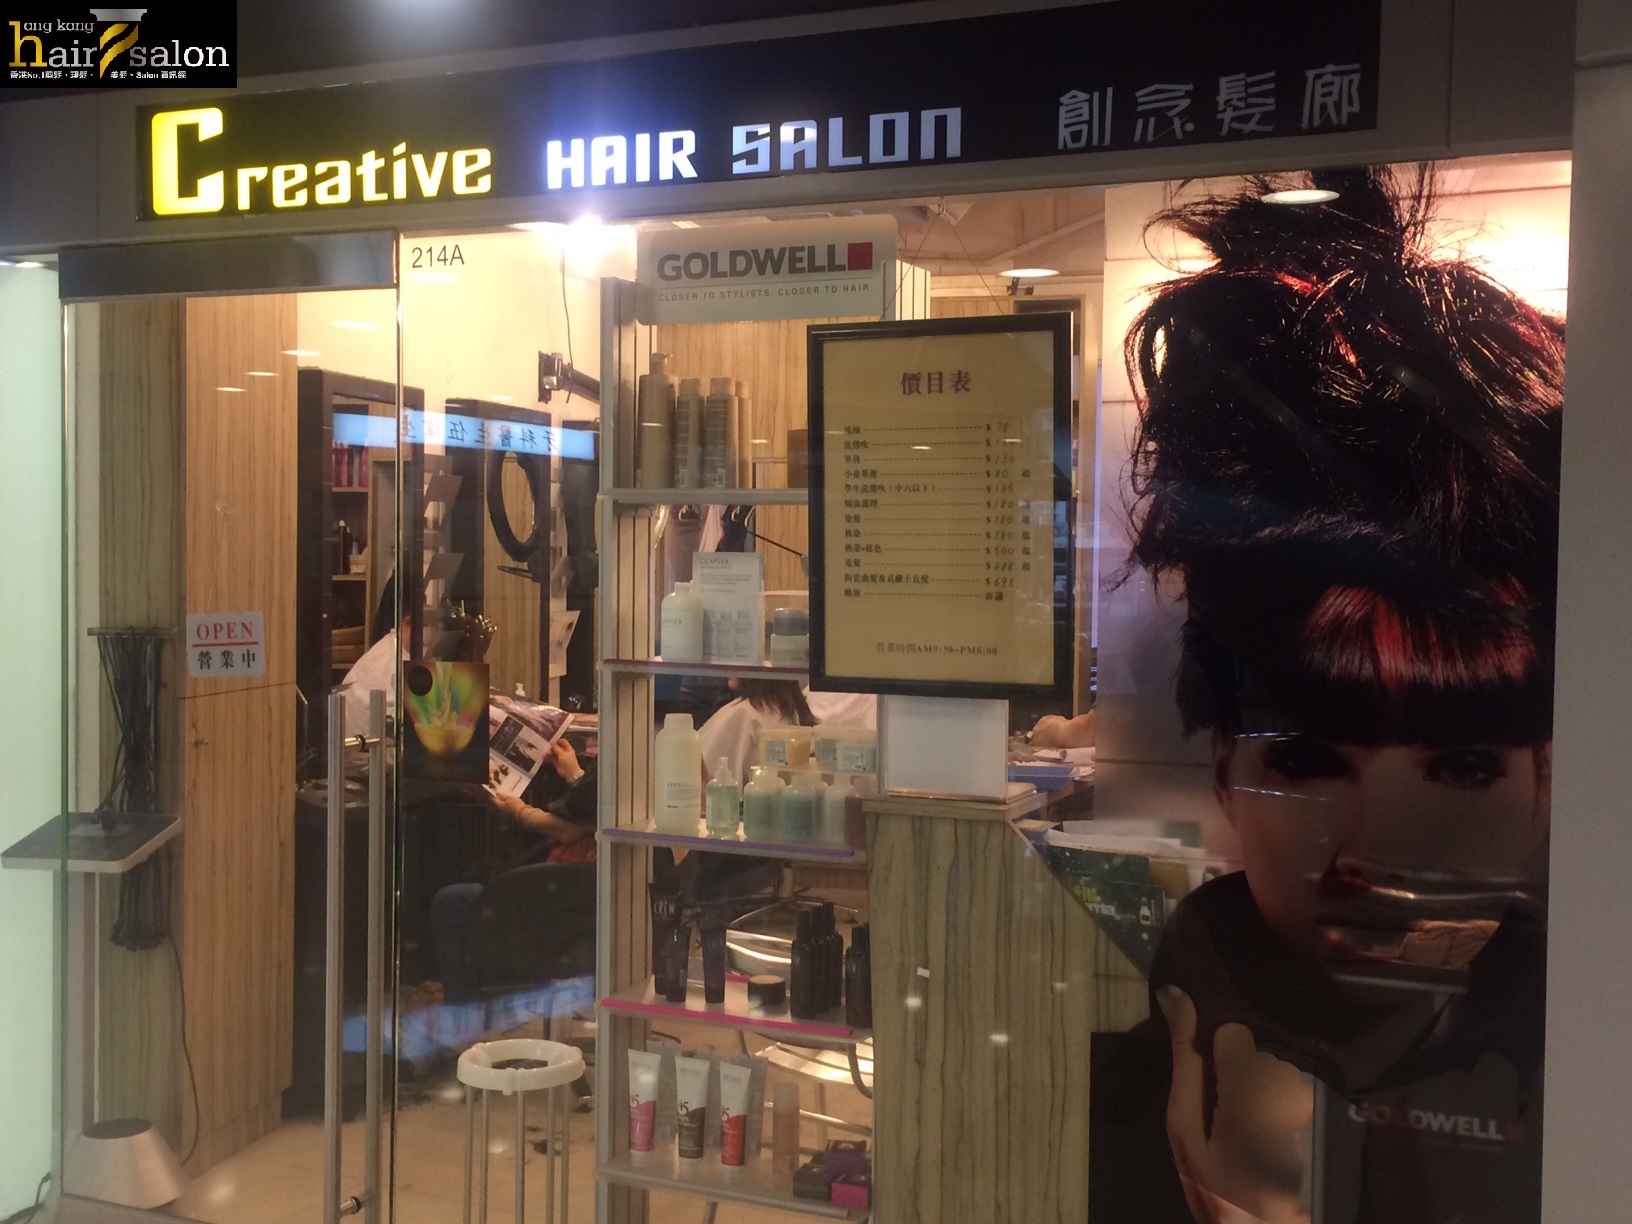 髮型屋 Salon: Creative Hair Salon 創念髮廊